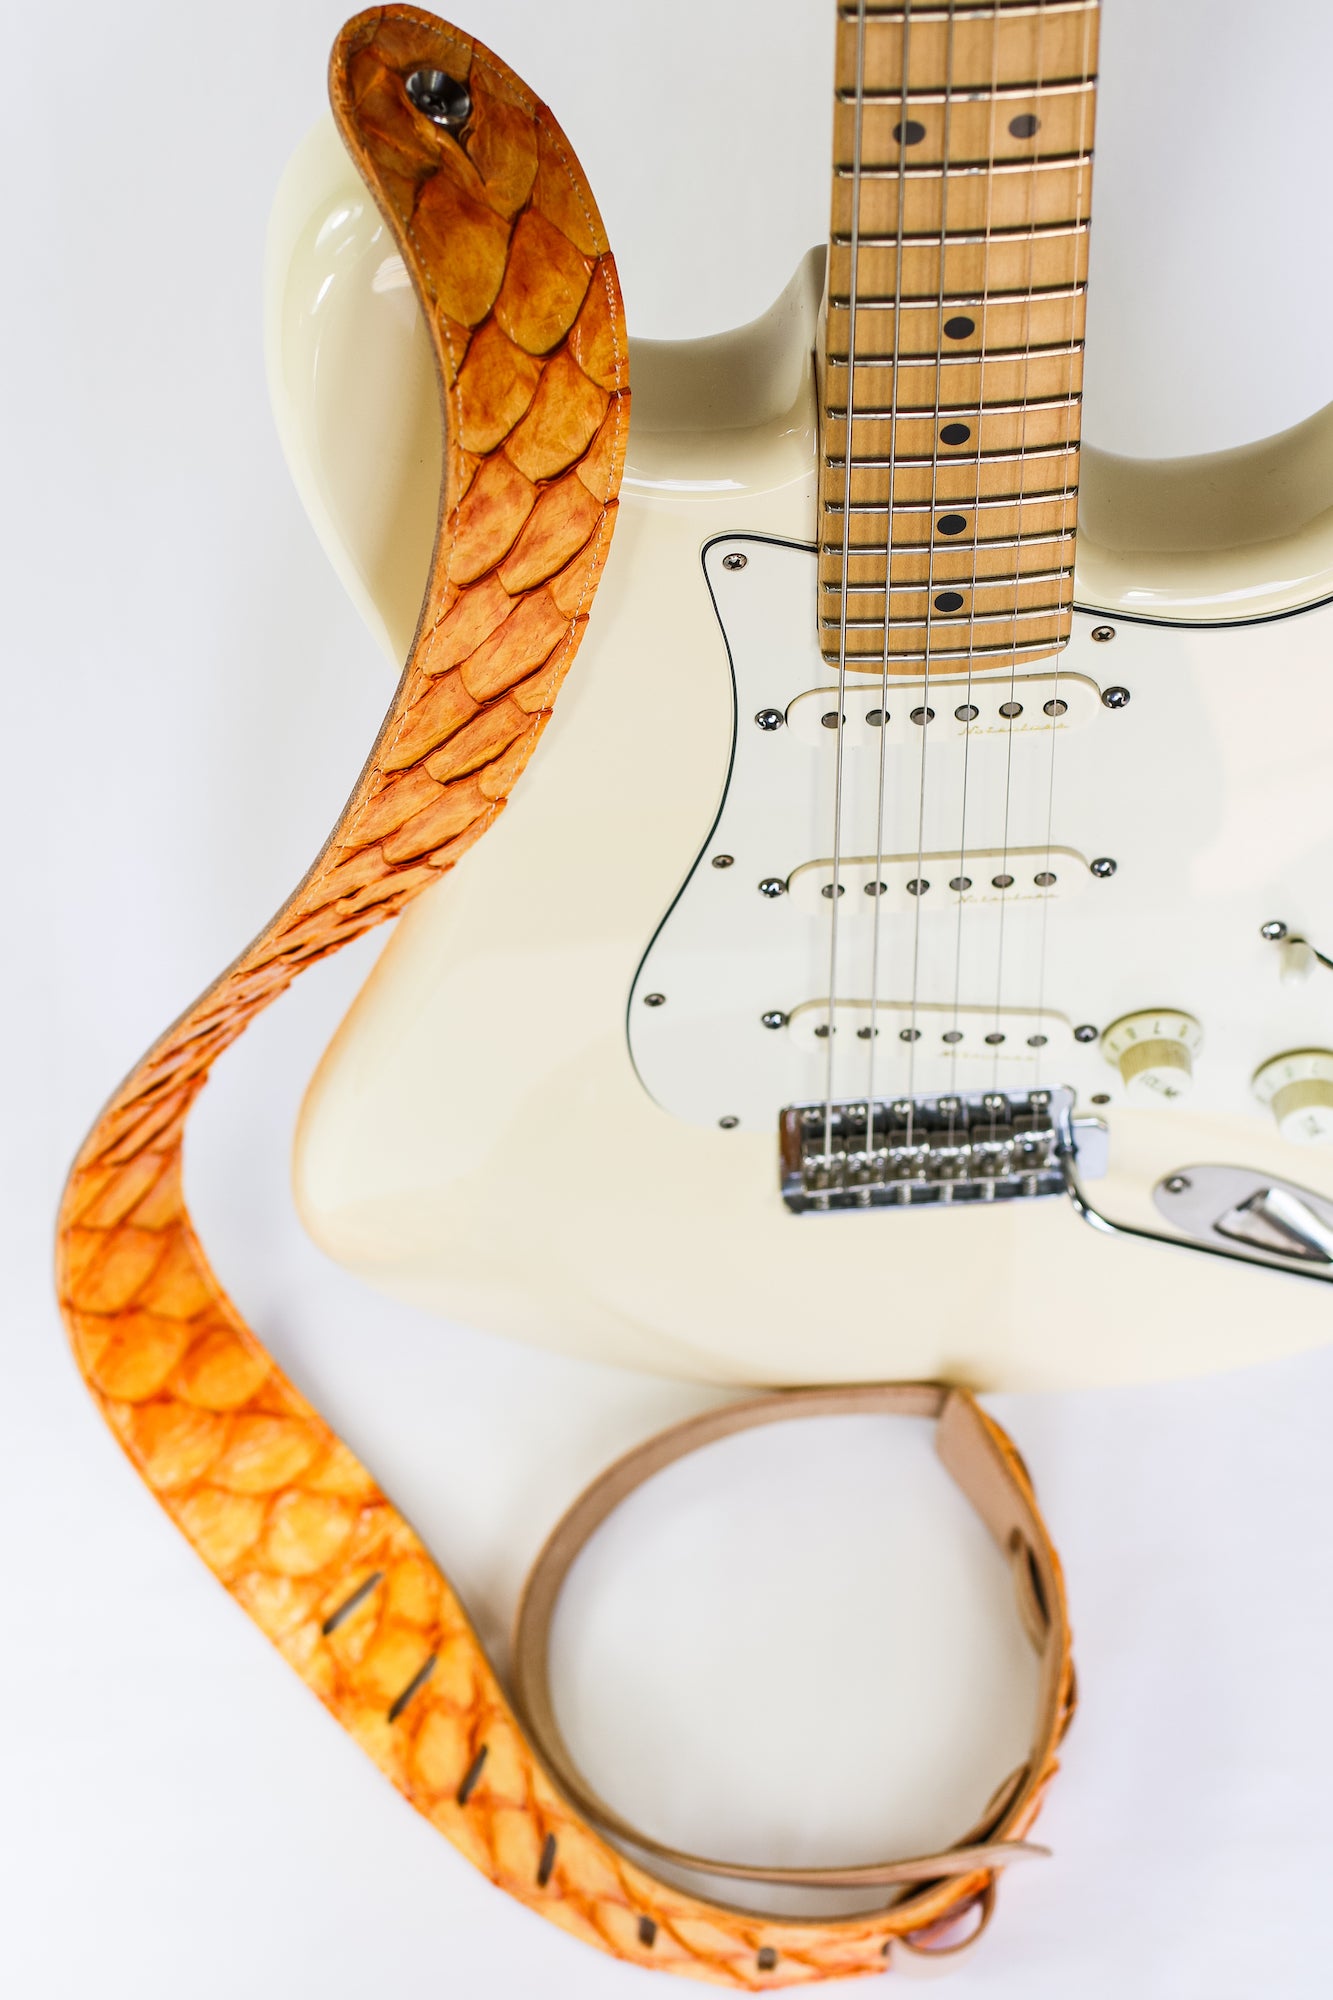 Pirarucu Fish Leather Guitar Strap